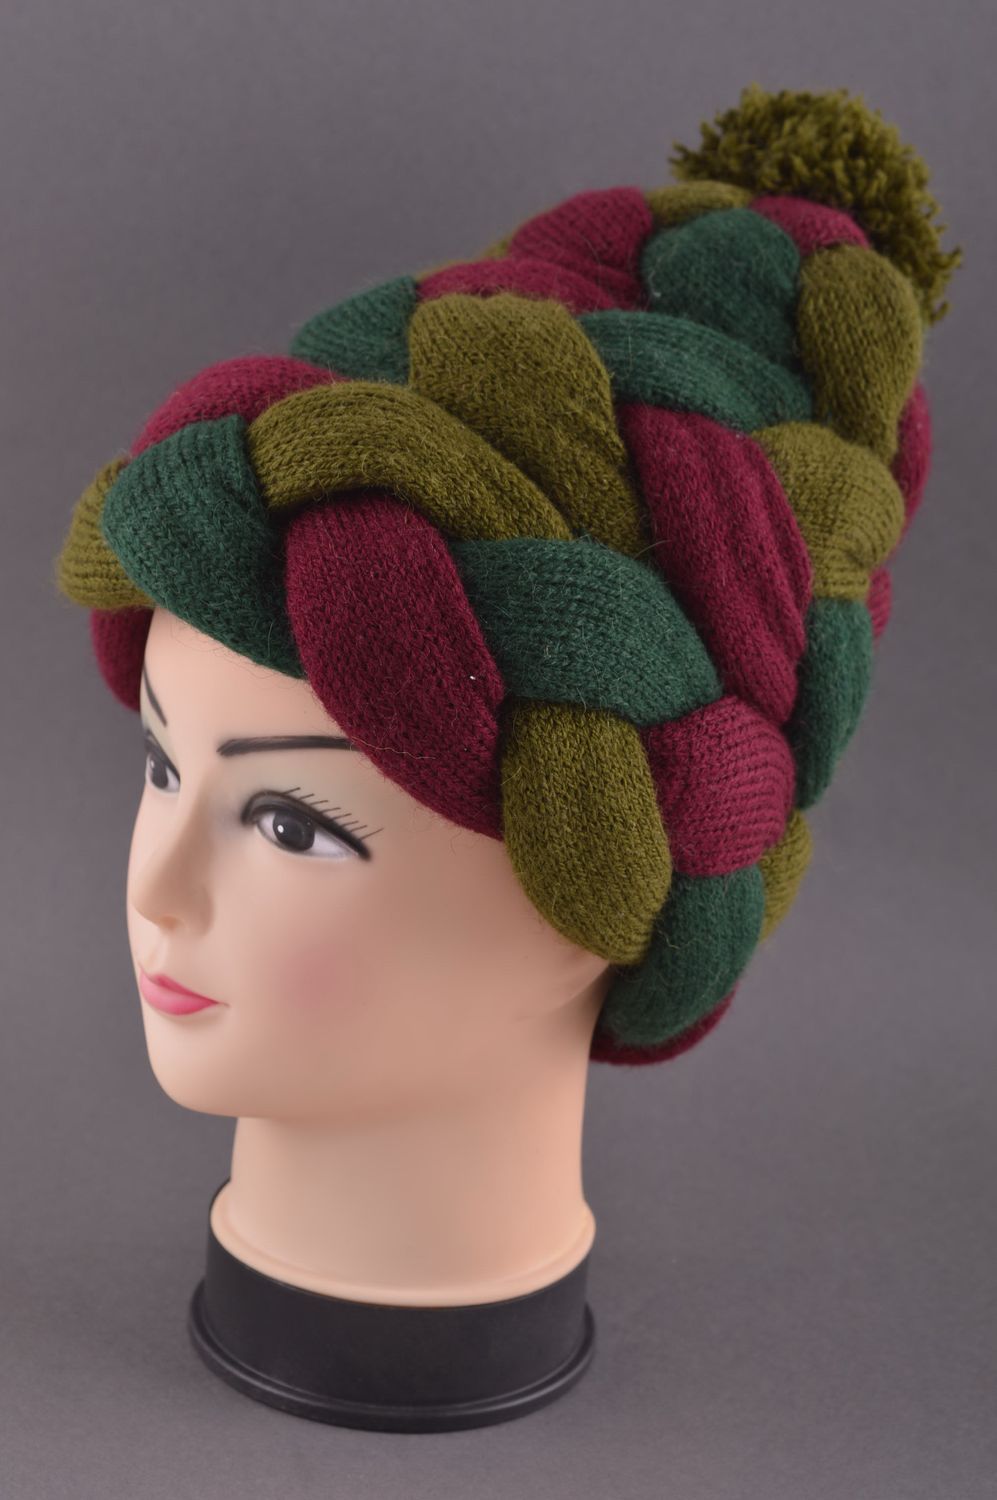 Головной убор хэнд мэйд зимняя женская шапка плетеная креативная зимняя шапка фото 1